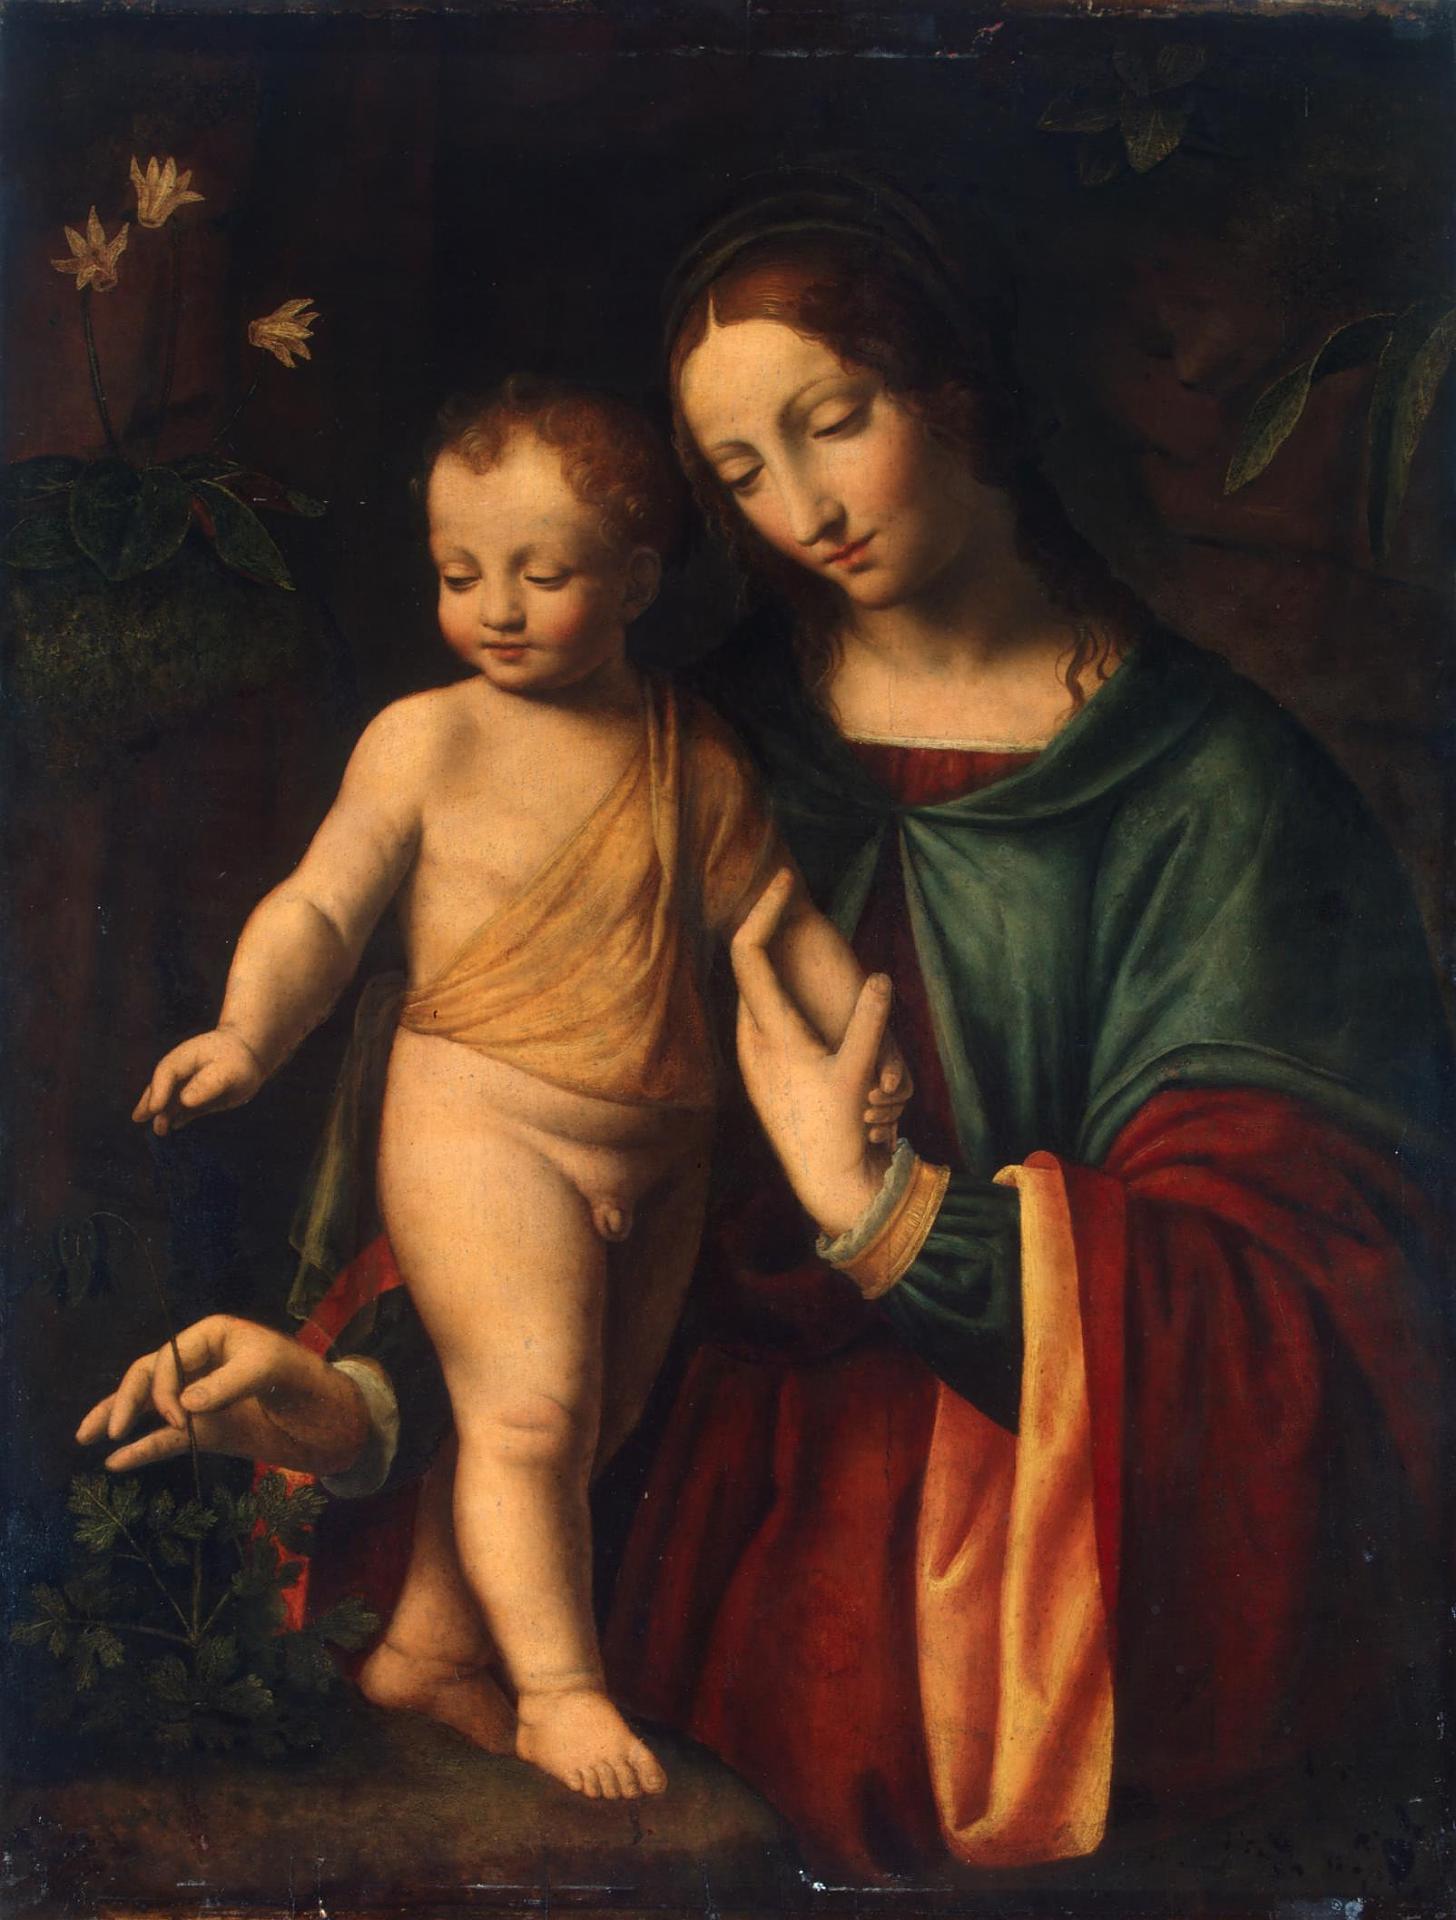 Бернардино Луини, мастерская. "Мадонна с Младенцем". 1512-1515. Эрмитаж, Санкт-Петербург.